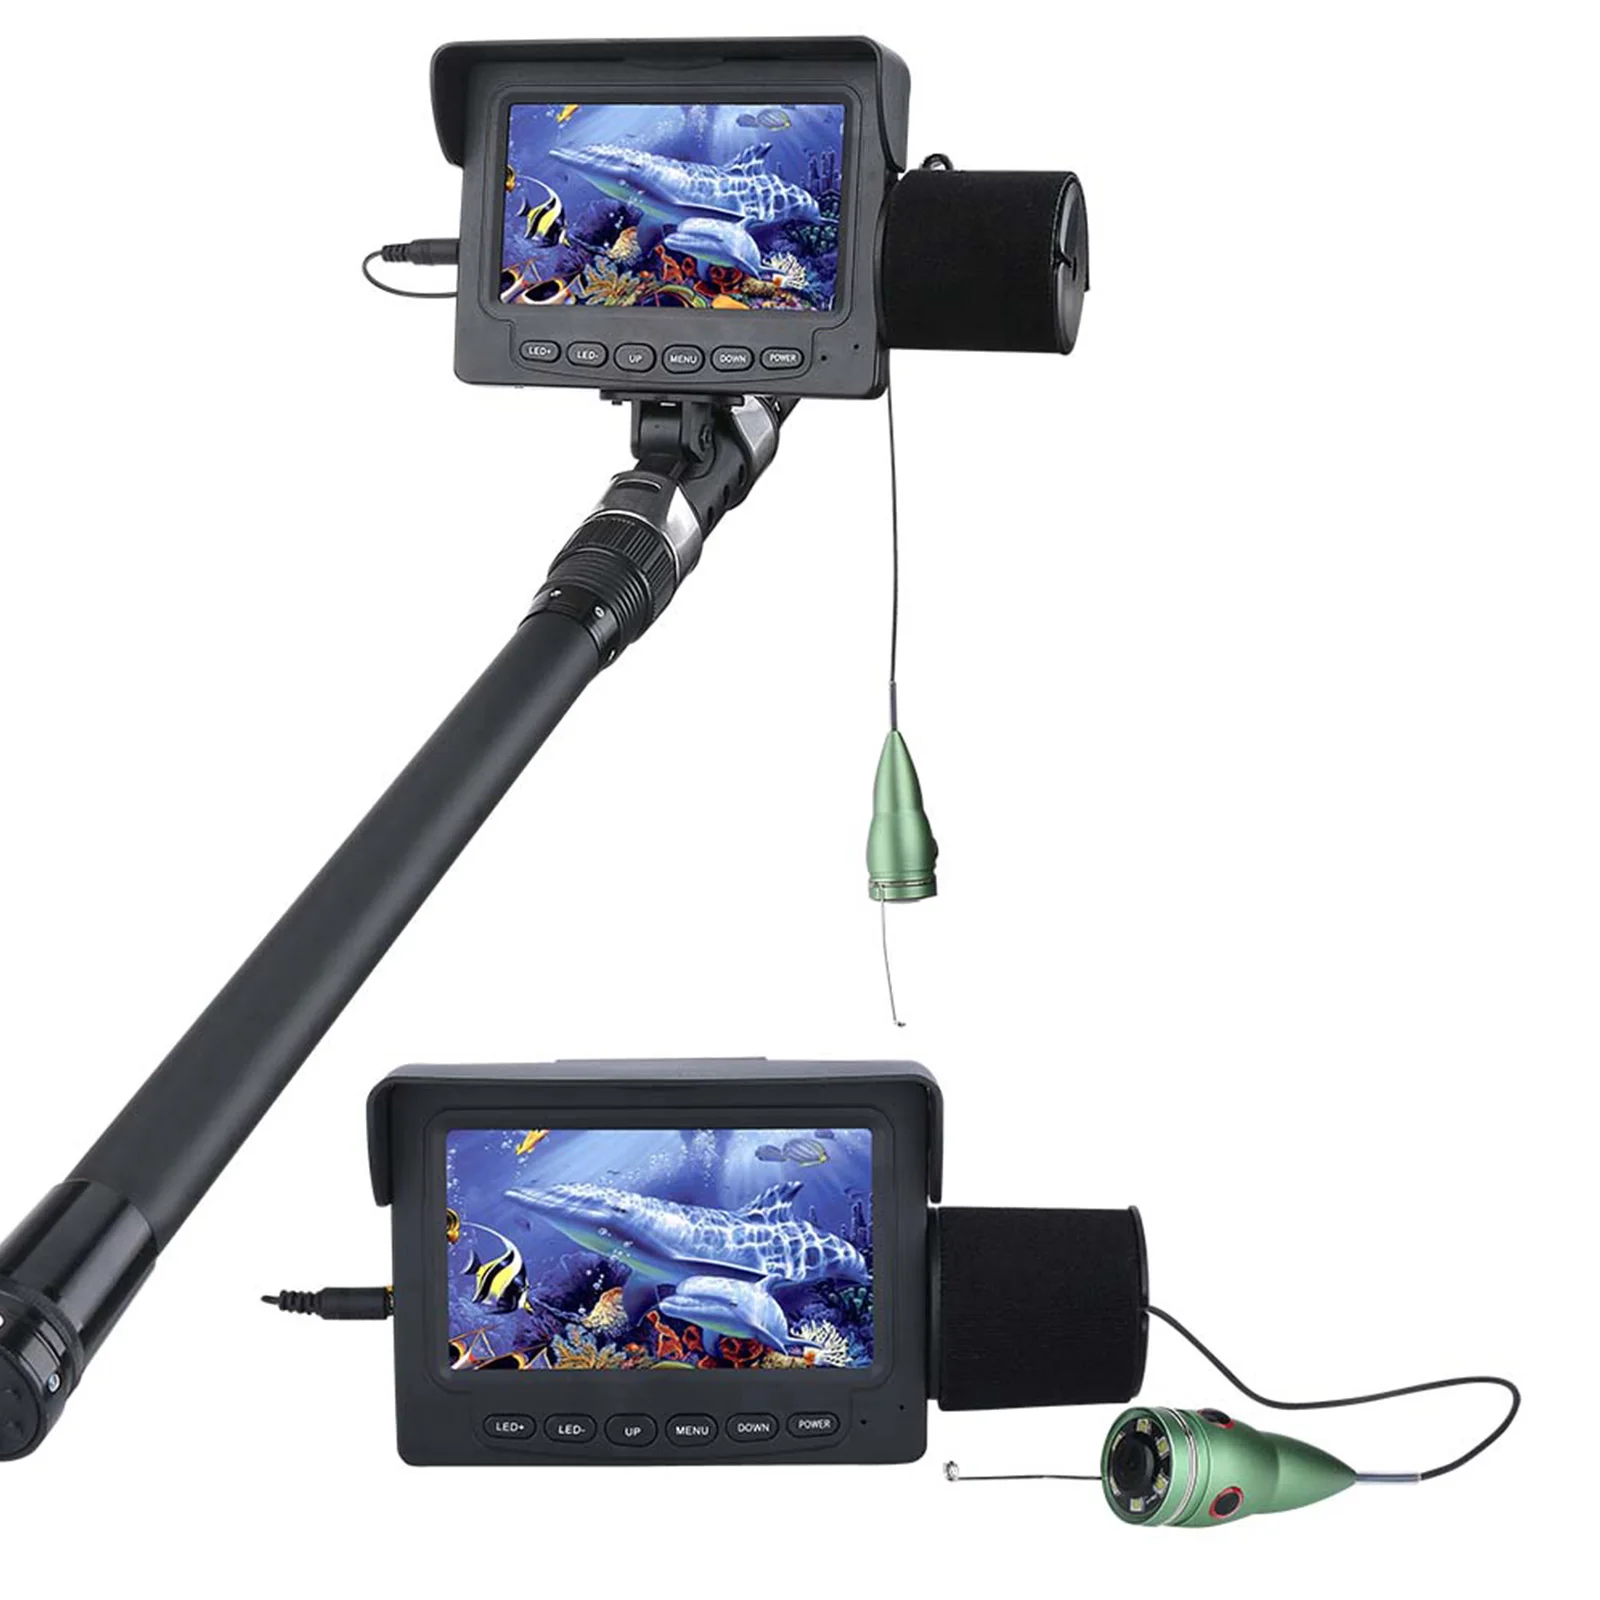 Монитор для камеры для рыбалки. Подводная камера Fishing f008g. Камера для рыбалки GAMWATER. Рыболокатор с ЖК-дисплеем 4,3 дюйма. Эхолот GAMWATER.